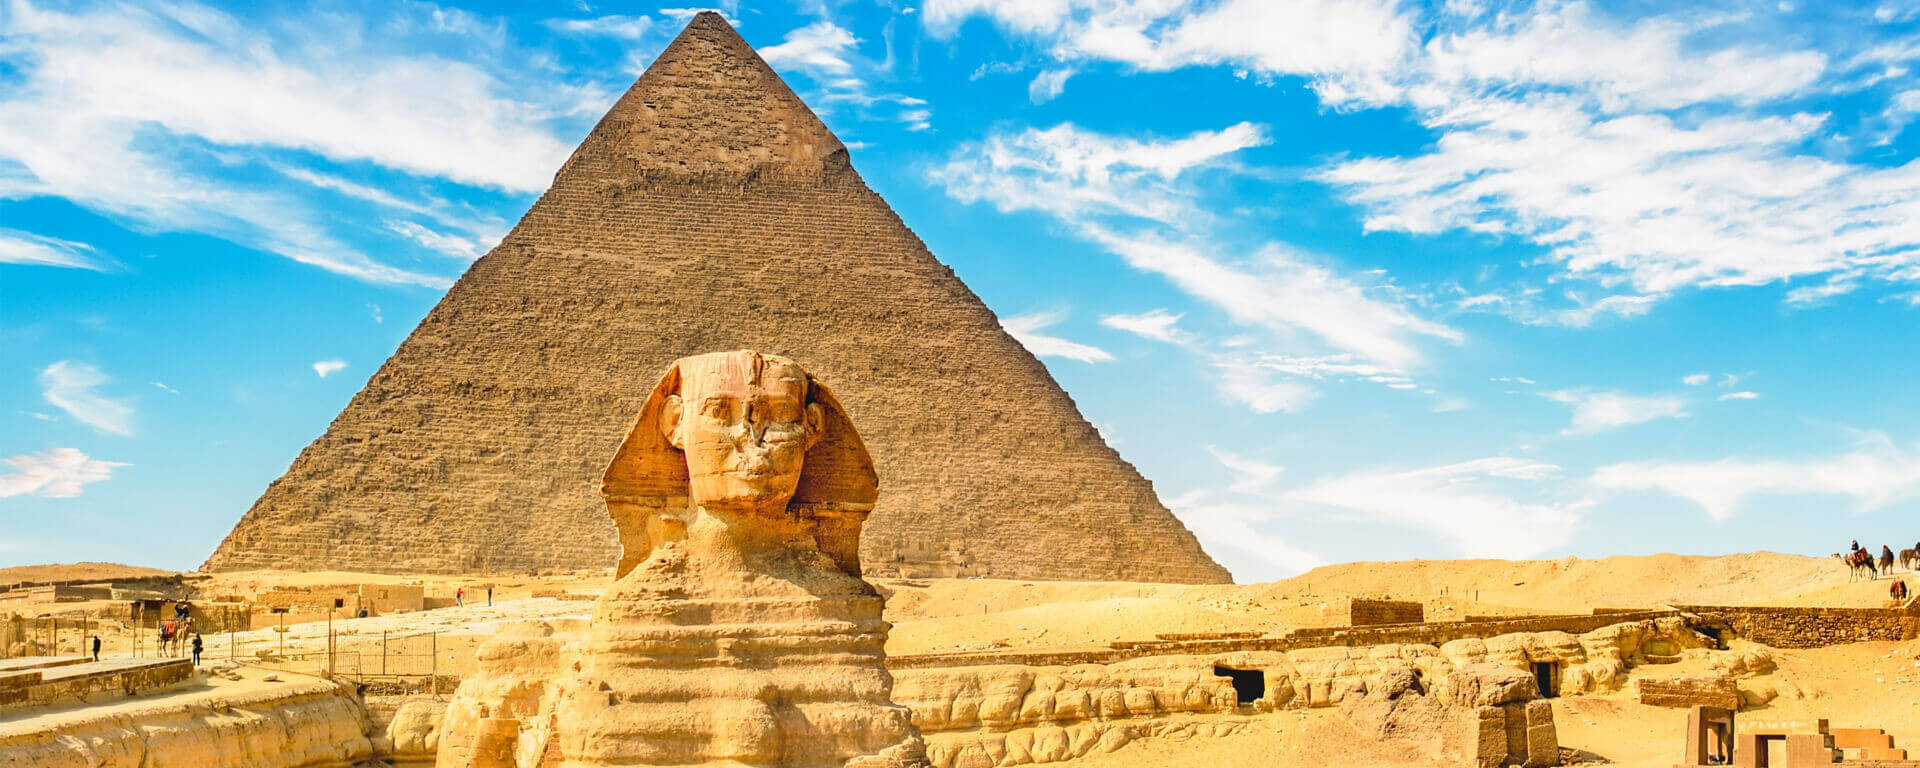 Откройте для себя лучшие туристические достопримечательности в Каире